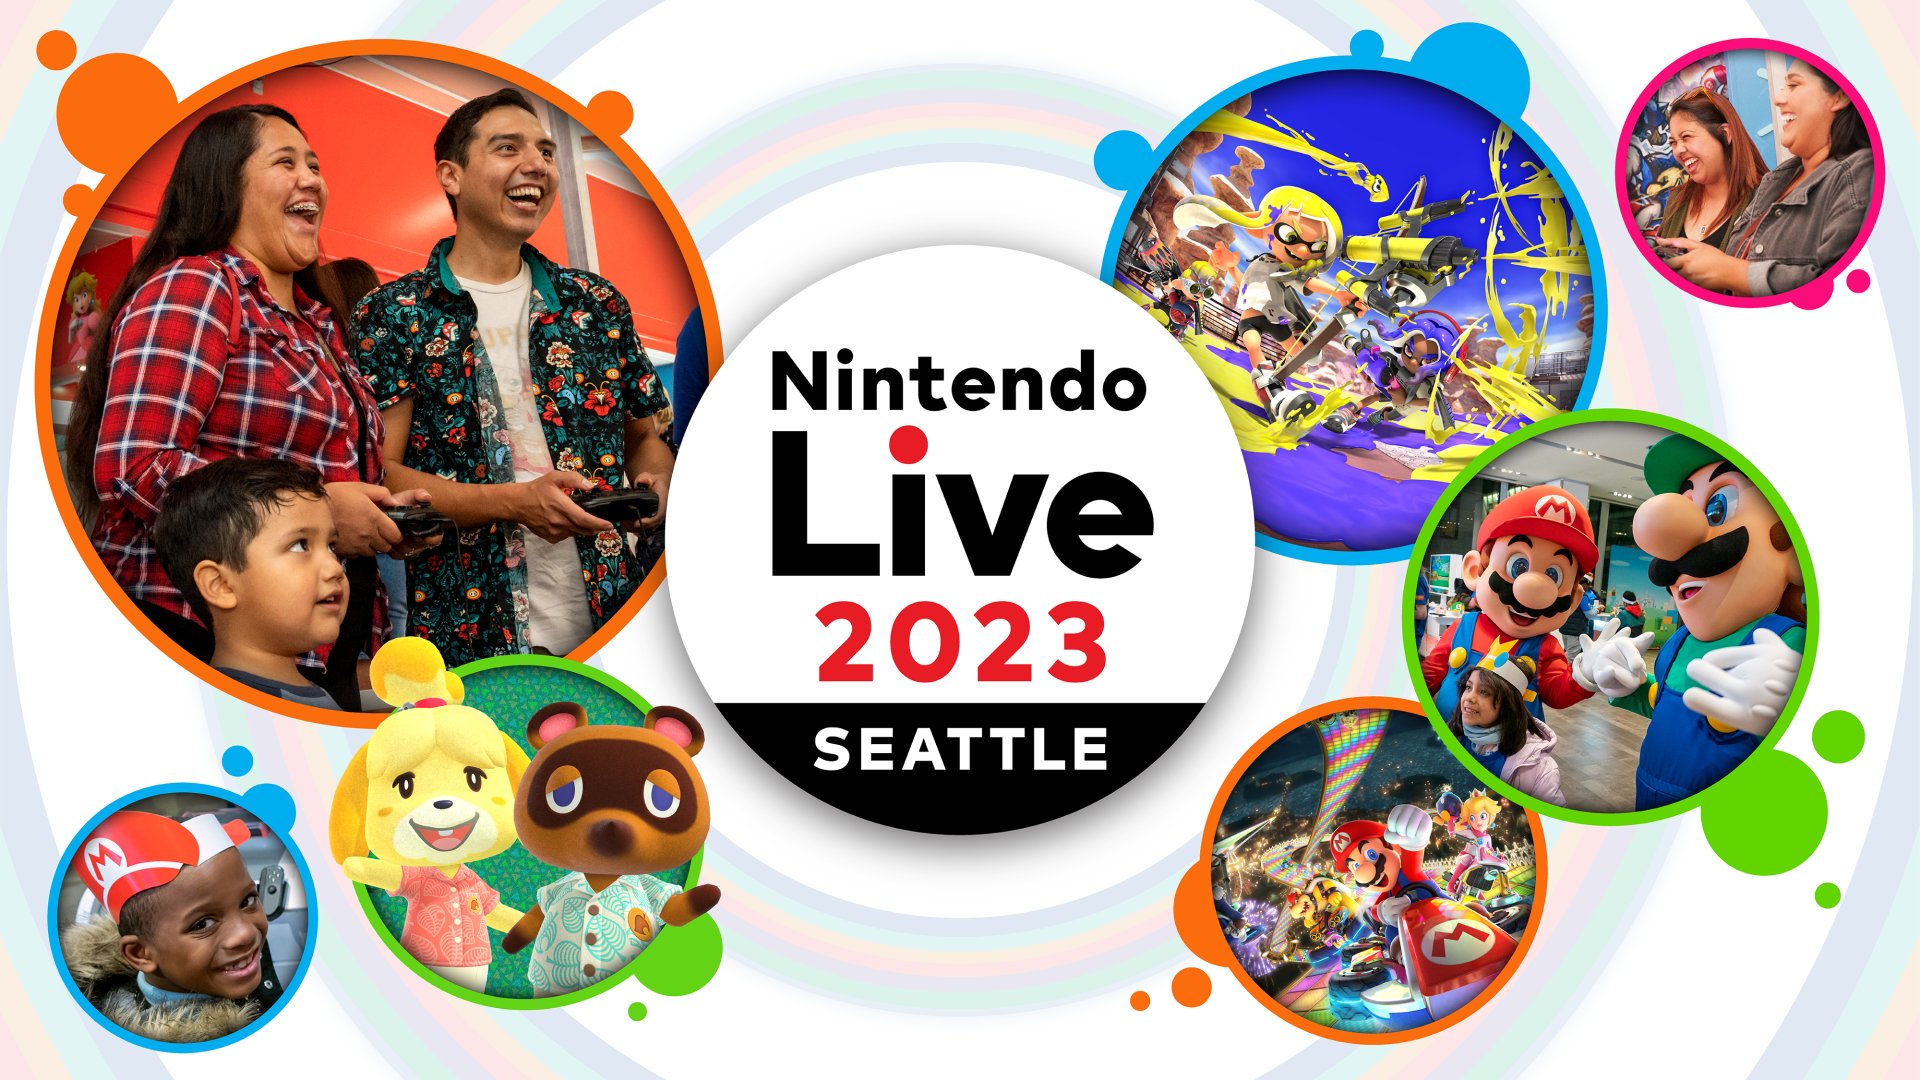 Ankündigung von Nintendo Live 2023 Seattle